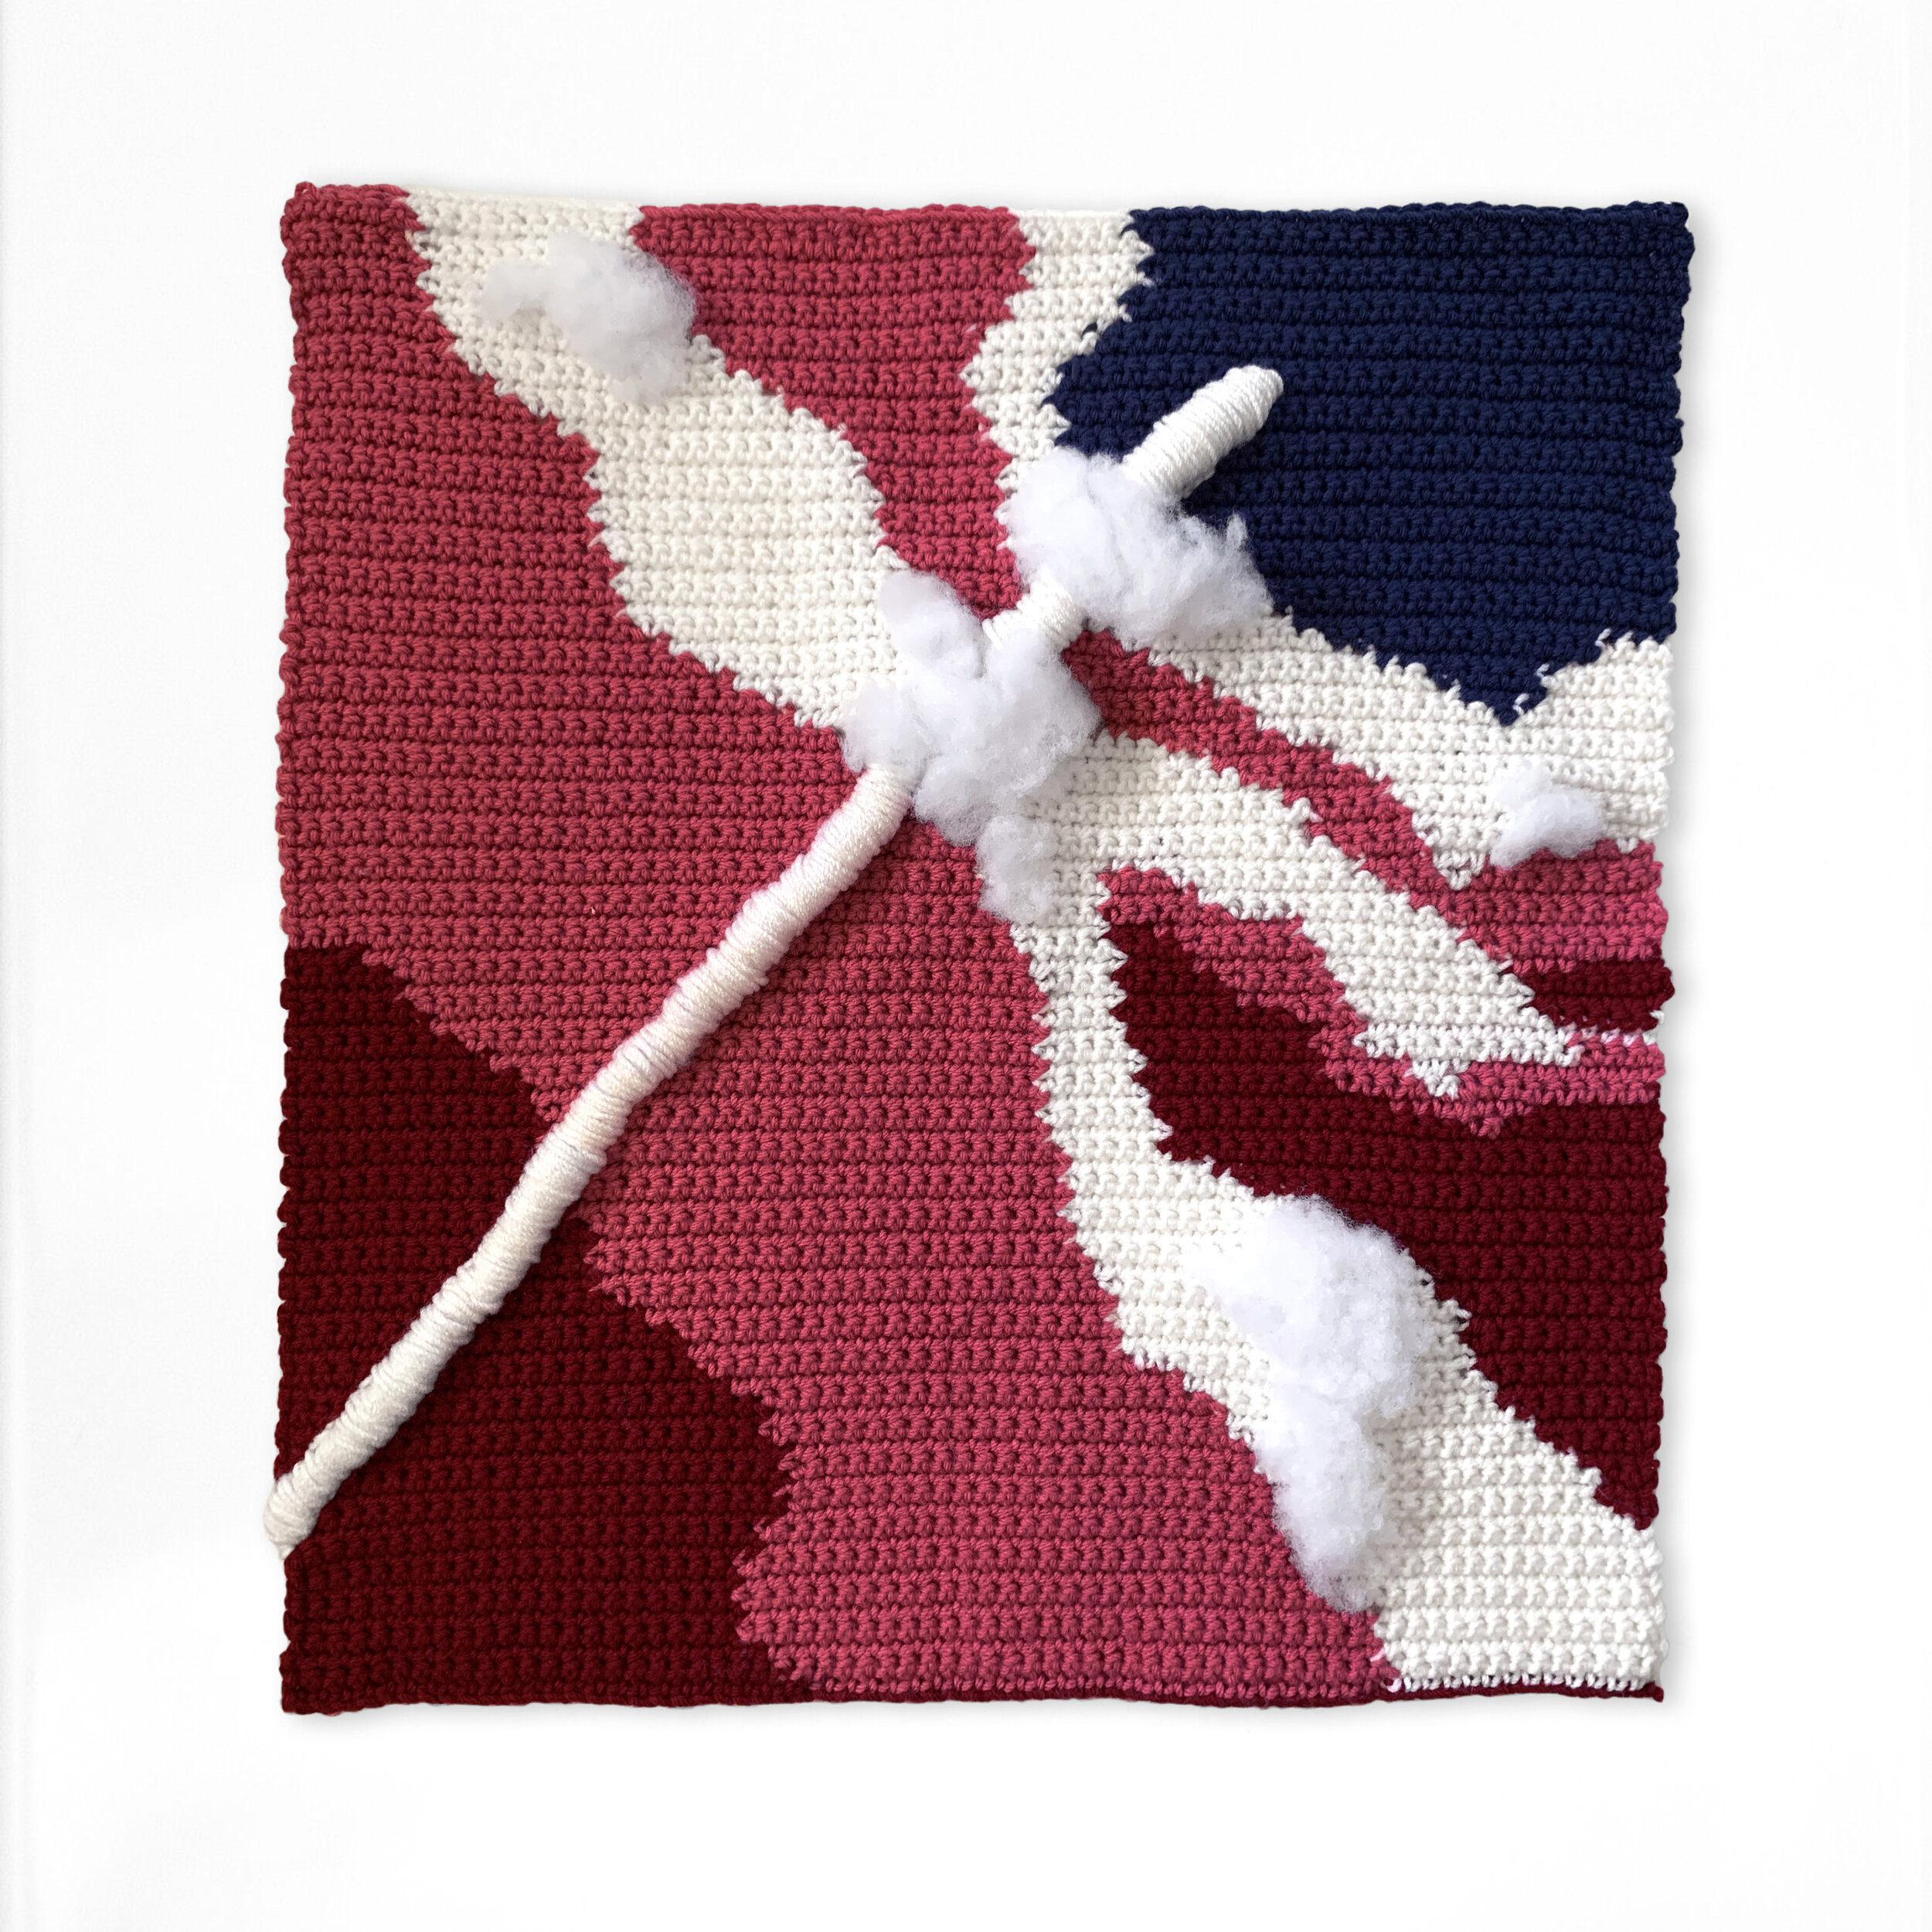 Crochet Tapestry, 2018